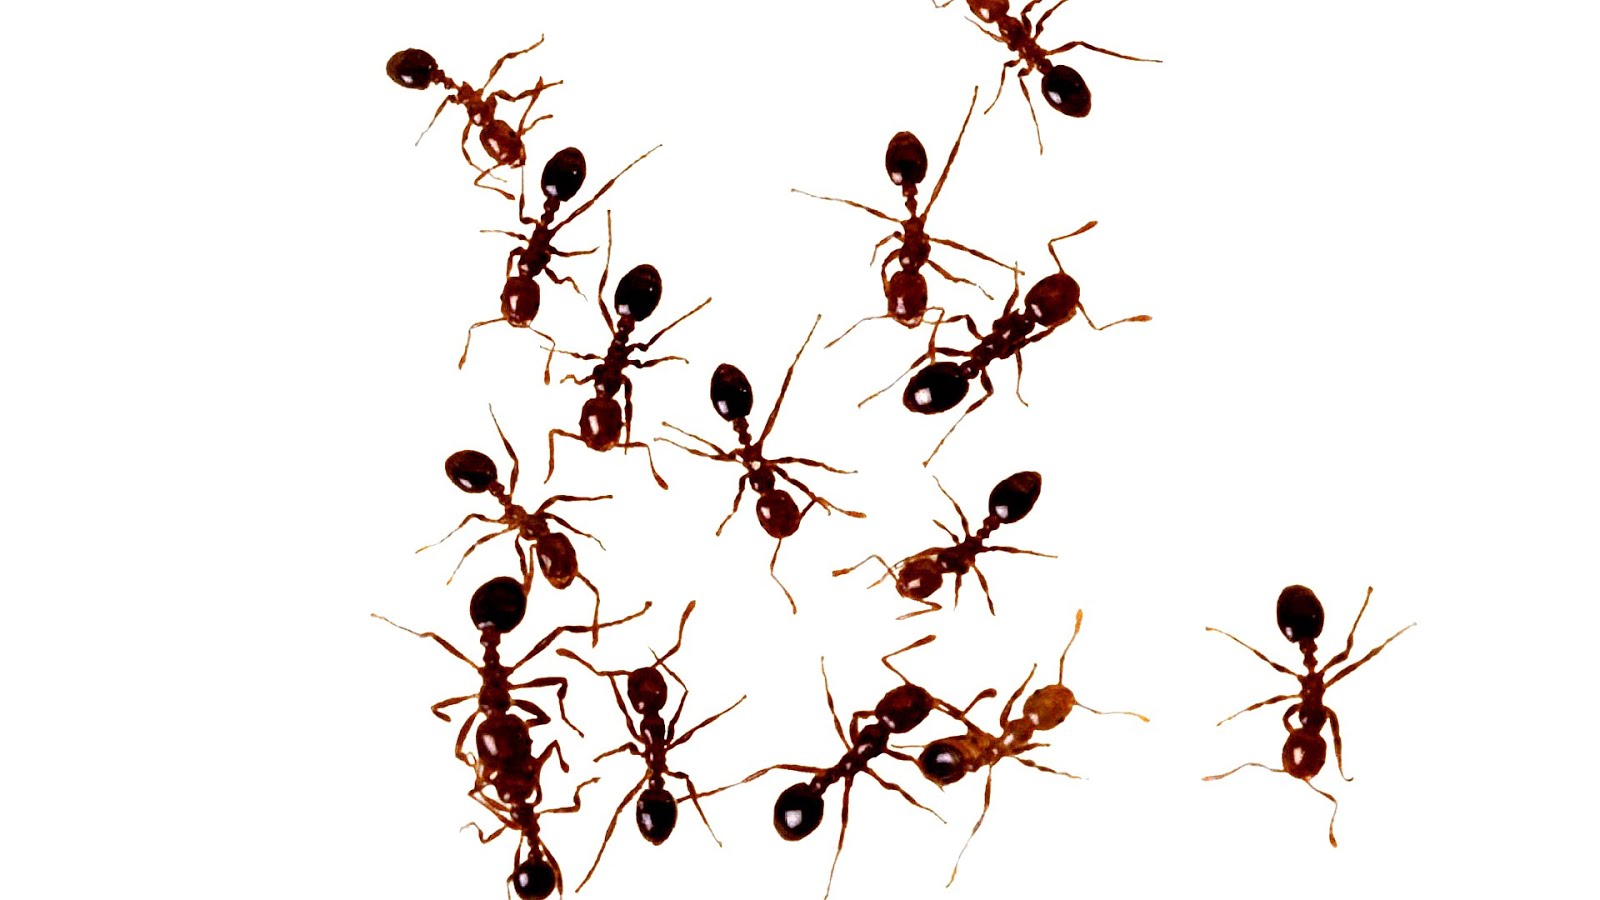 Летающие муравьи в доме. Касты муравьев жнецов. Муравьи Messor structor самец. Муравьиная ферма с муравьями жнецами. Куча муравьев.